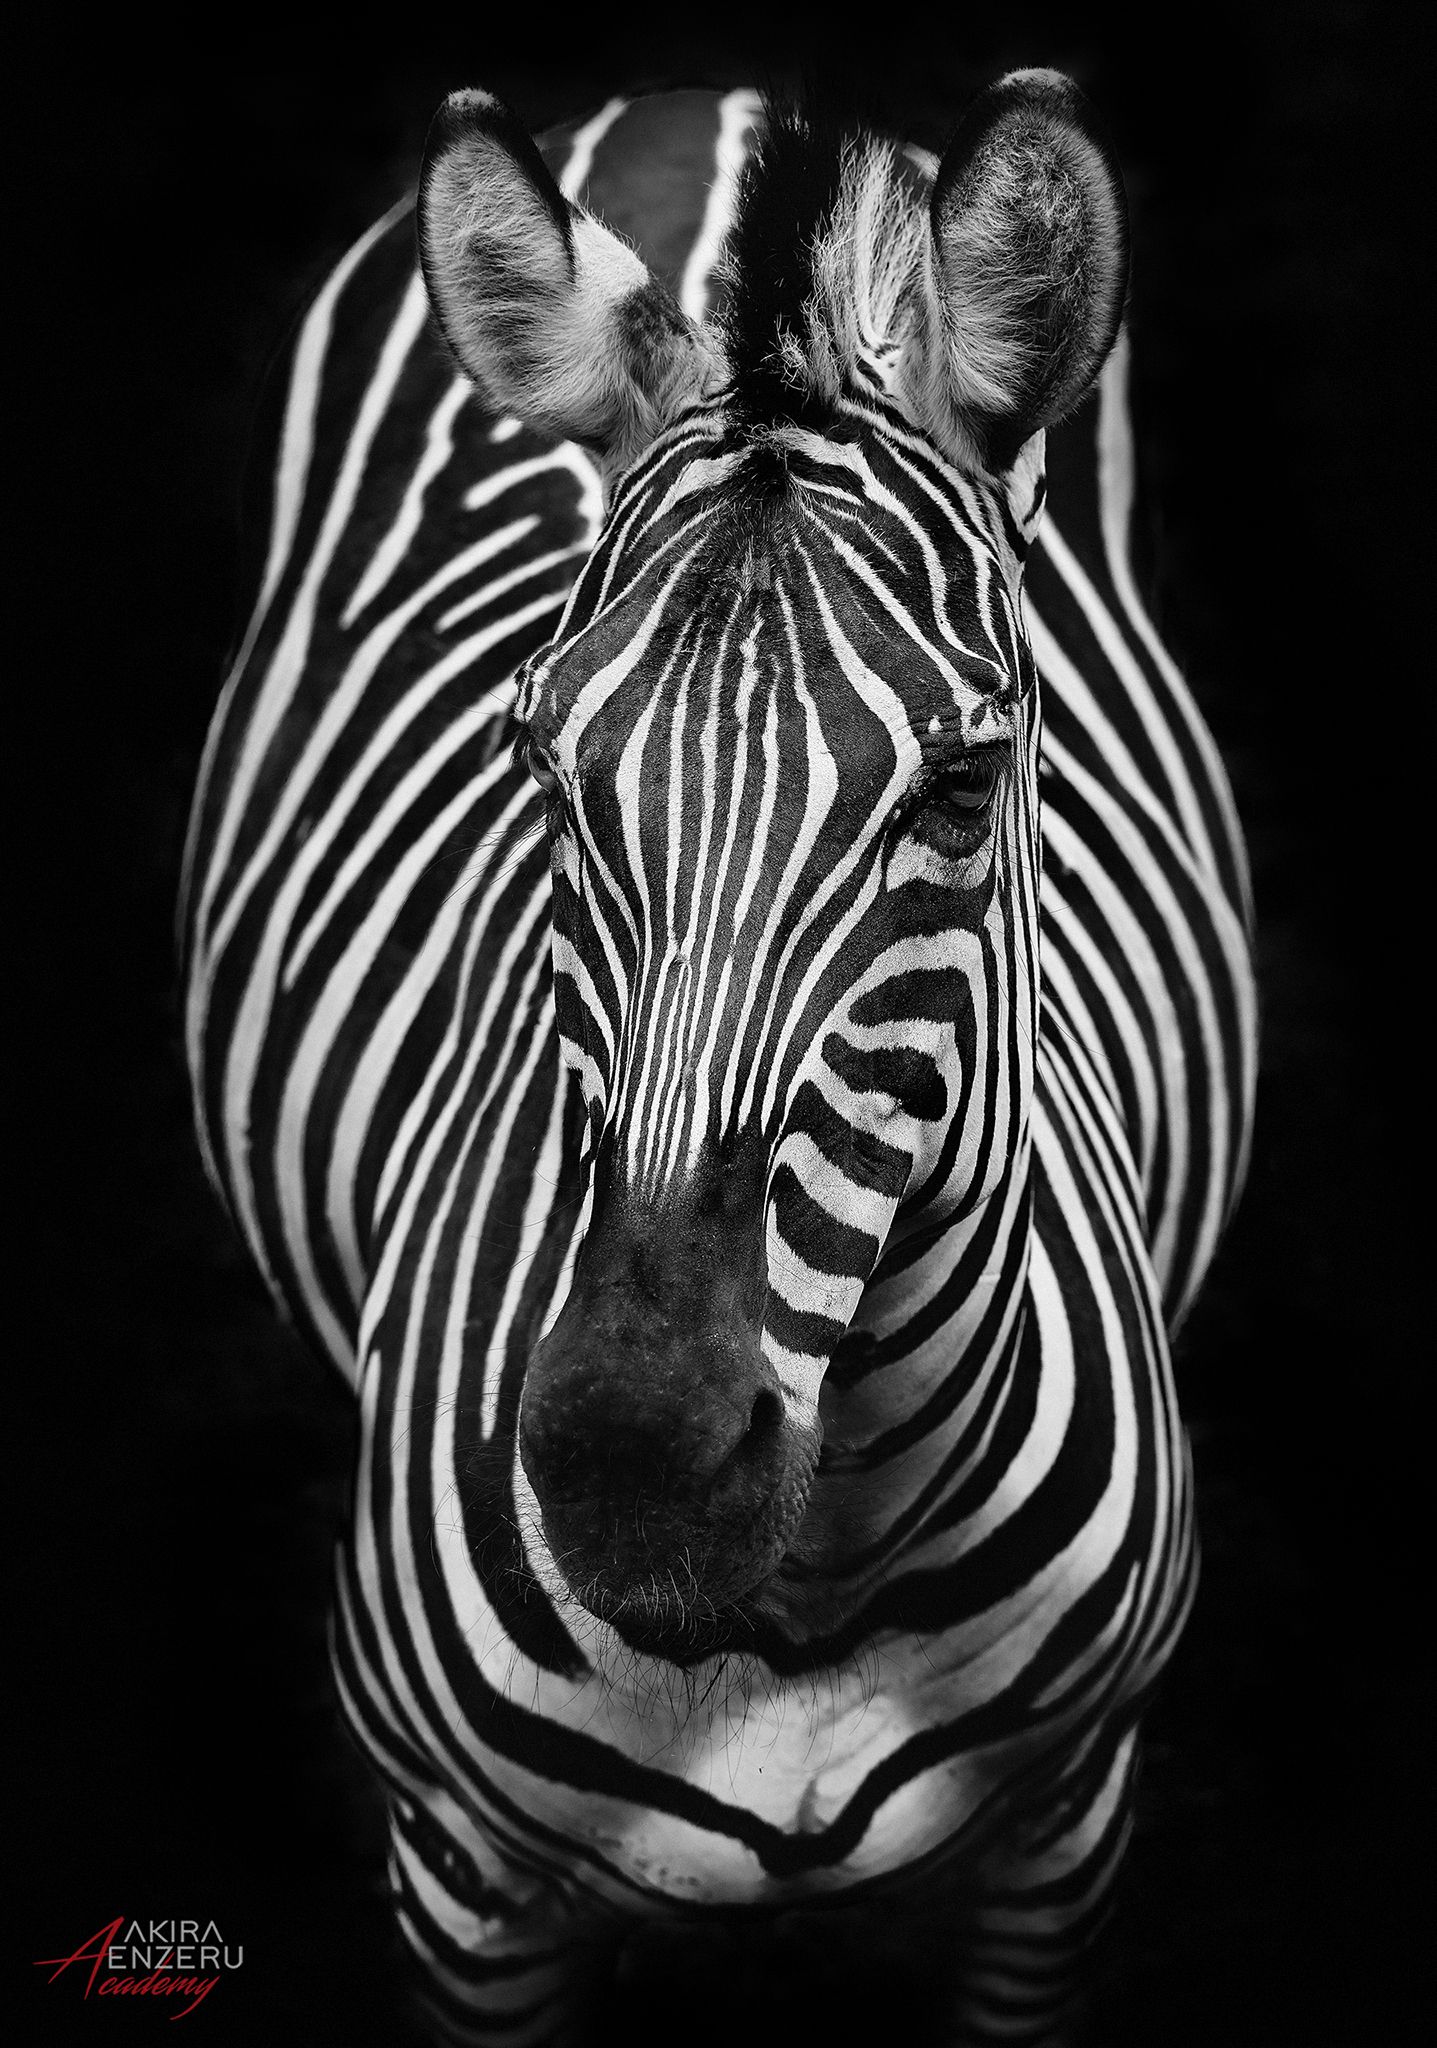 зебры zebra, Akira Enzeru